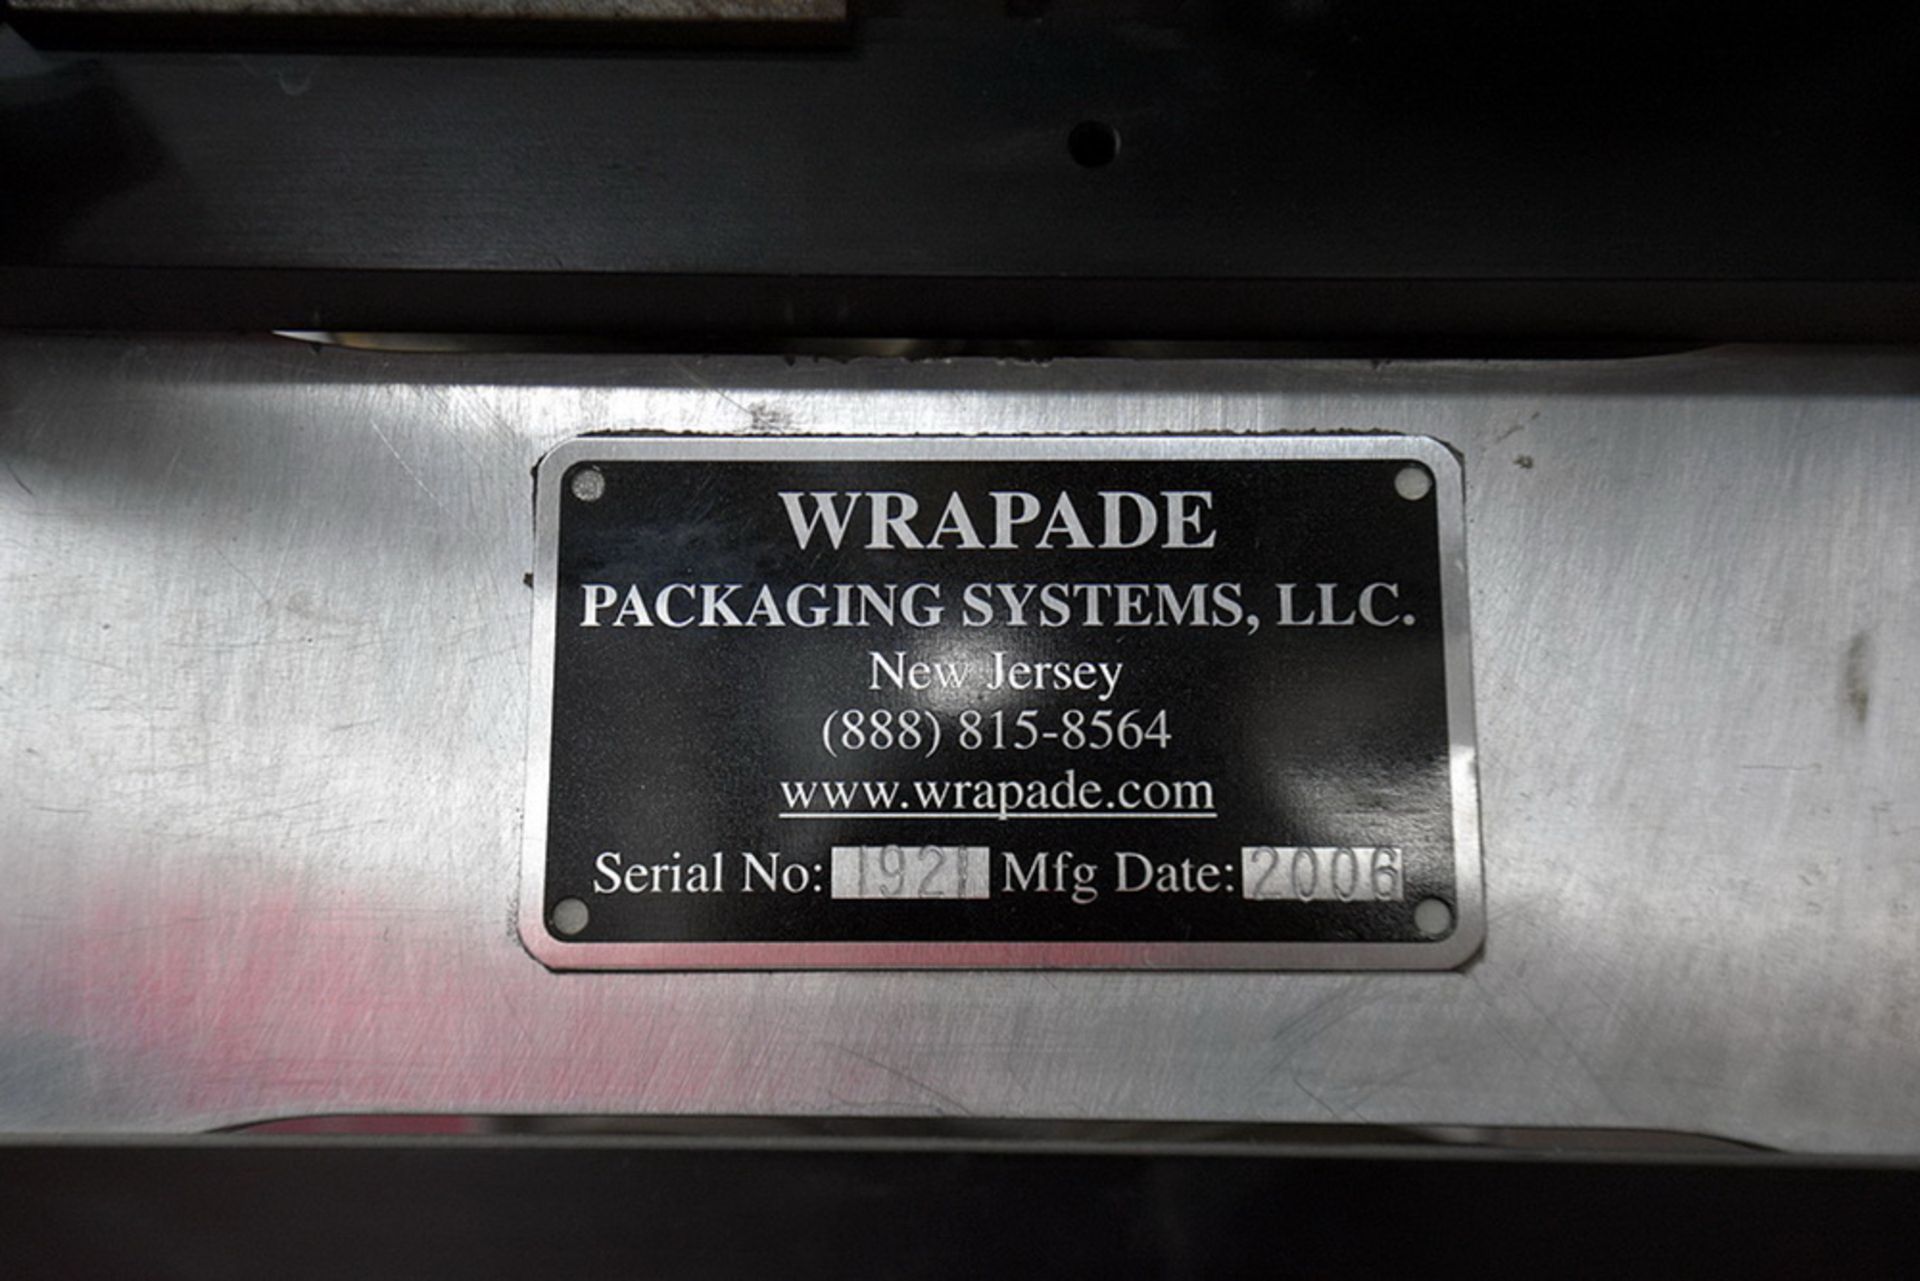 Wrapade Vertical Strip Packaging Machine, Model VSP, S/N 192, new 2006 - Image 13 of 22